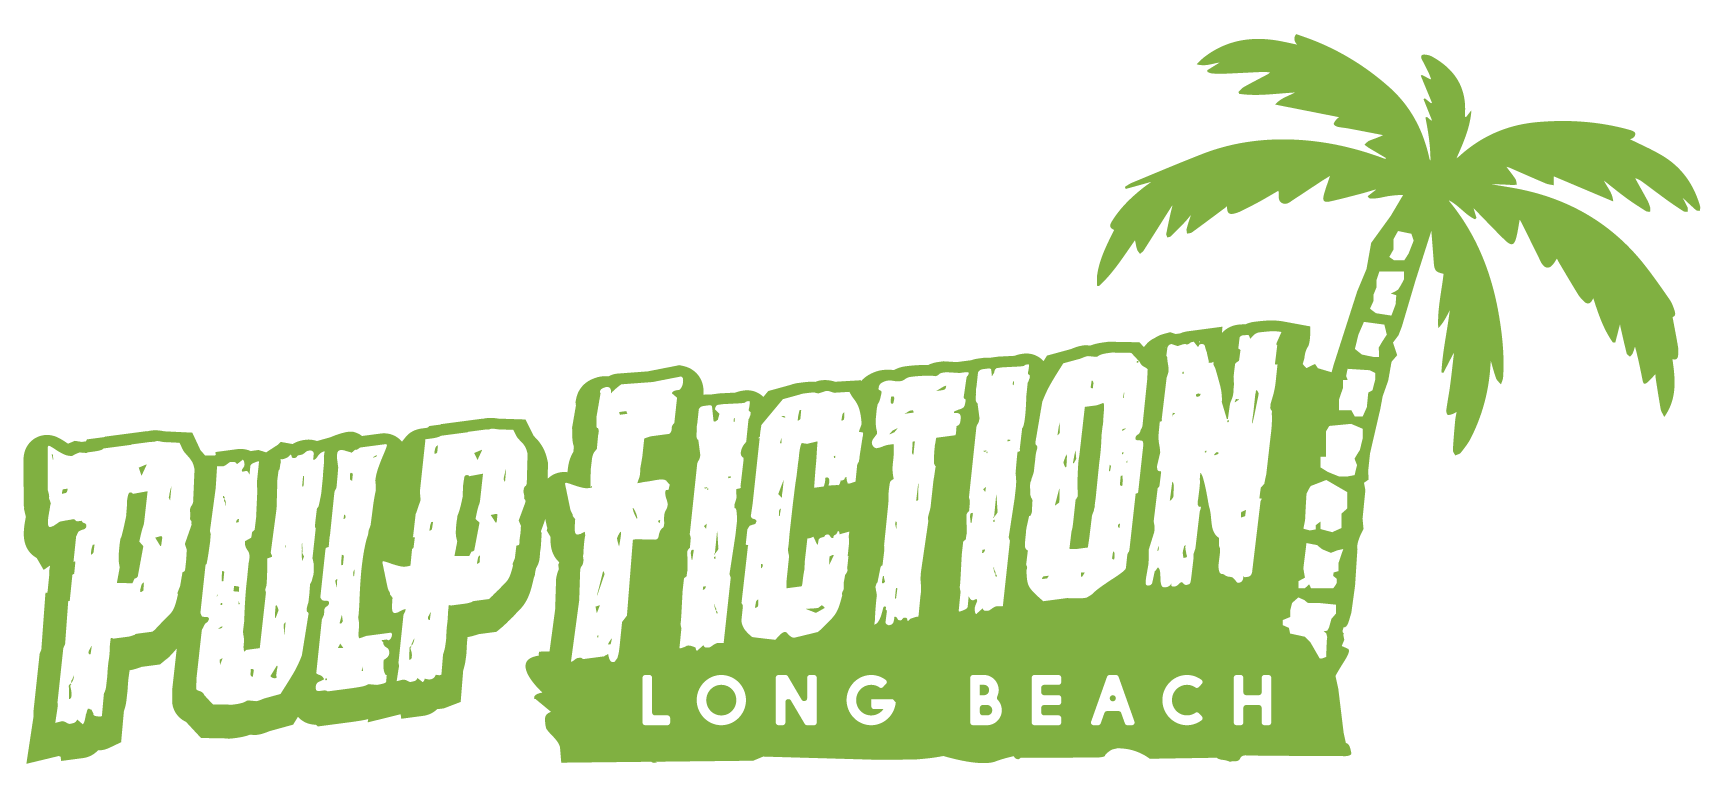 Pulp Fiction Long Beach